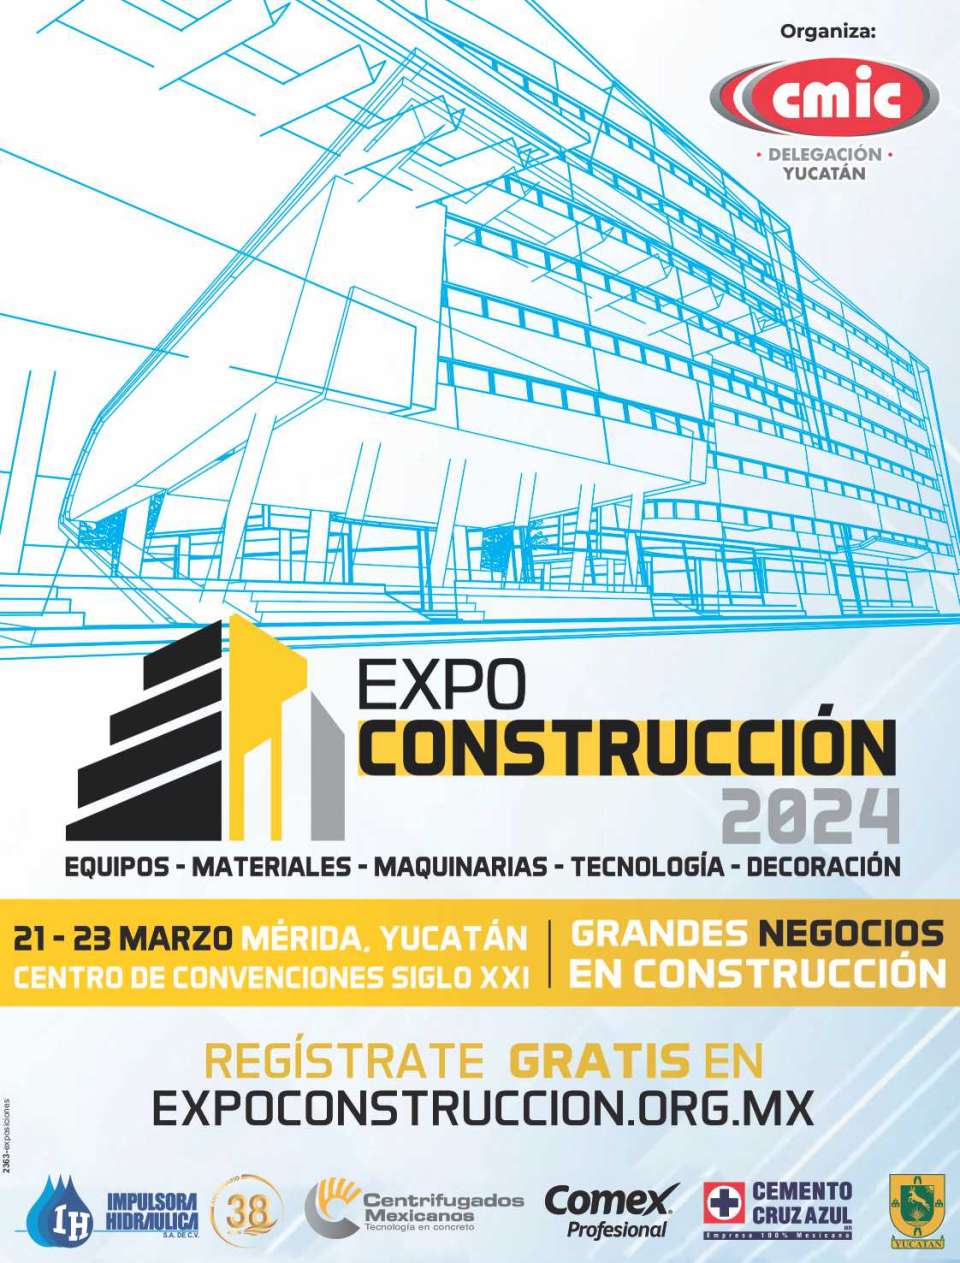 Expo Construccion Yucatan, del 21 al 23 de Marzo 2024, Centro de Convenciones Siglo XXI